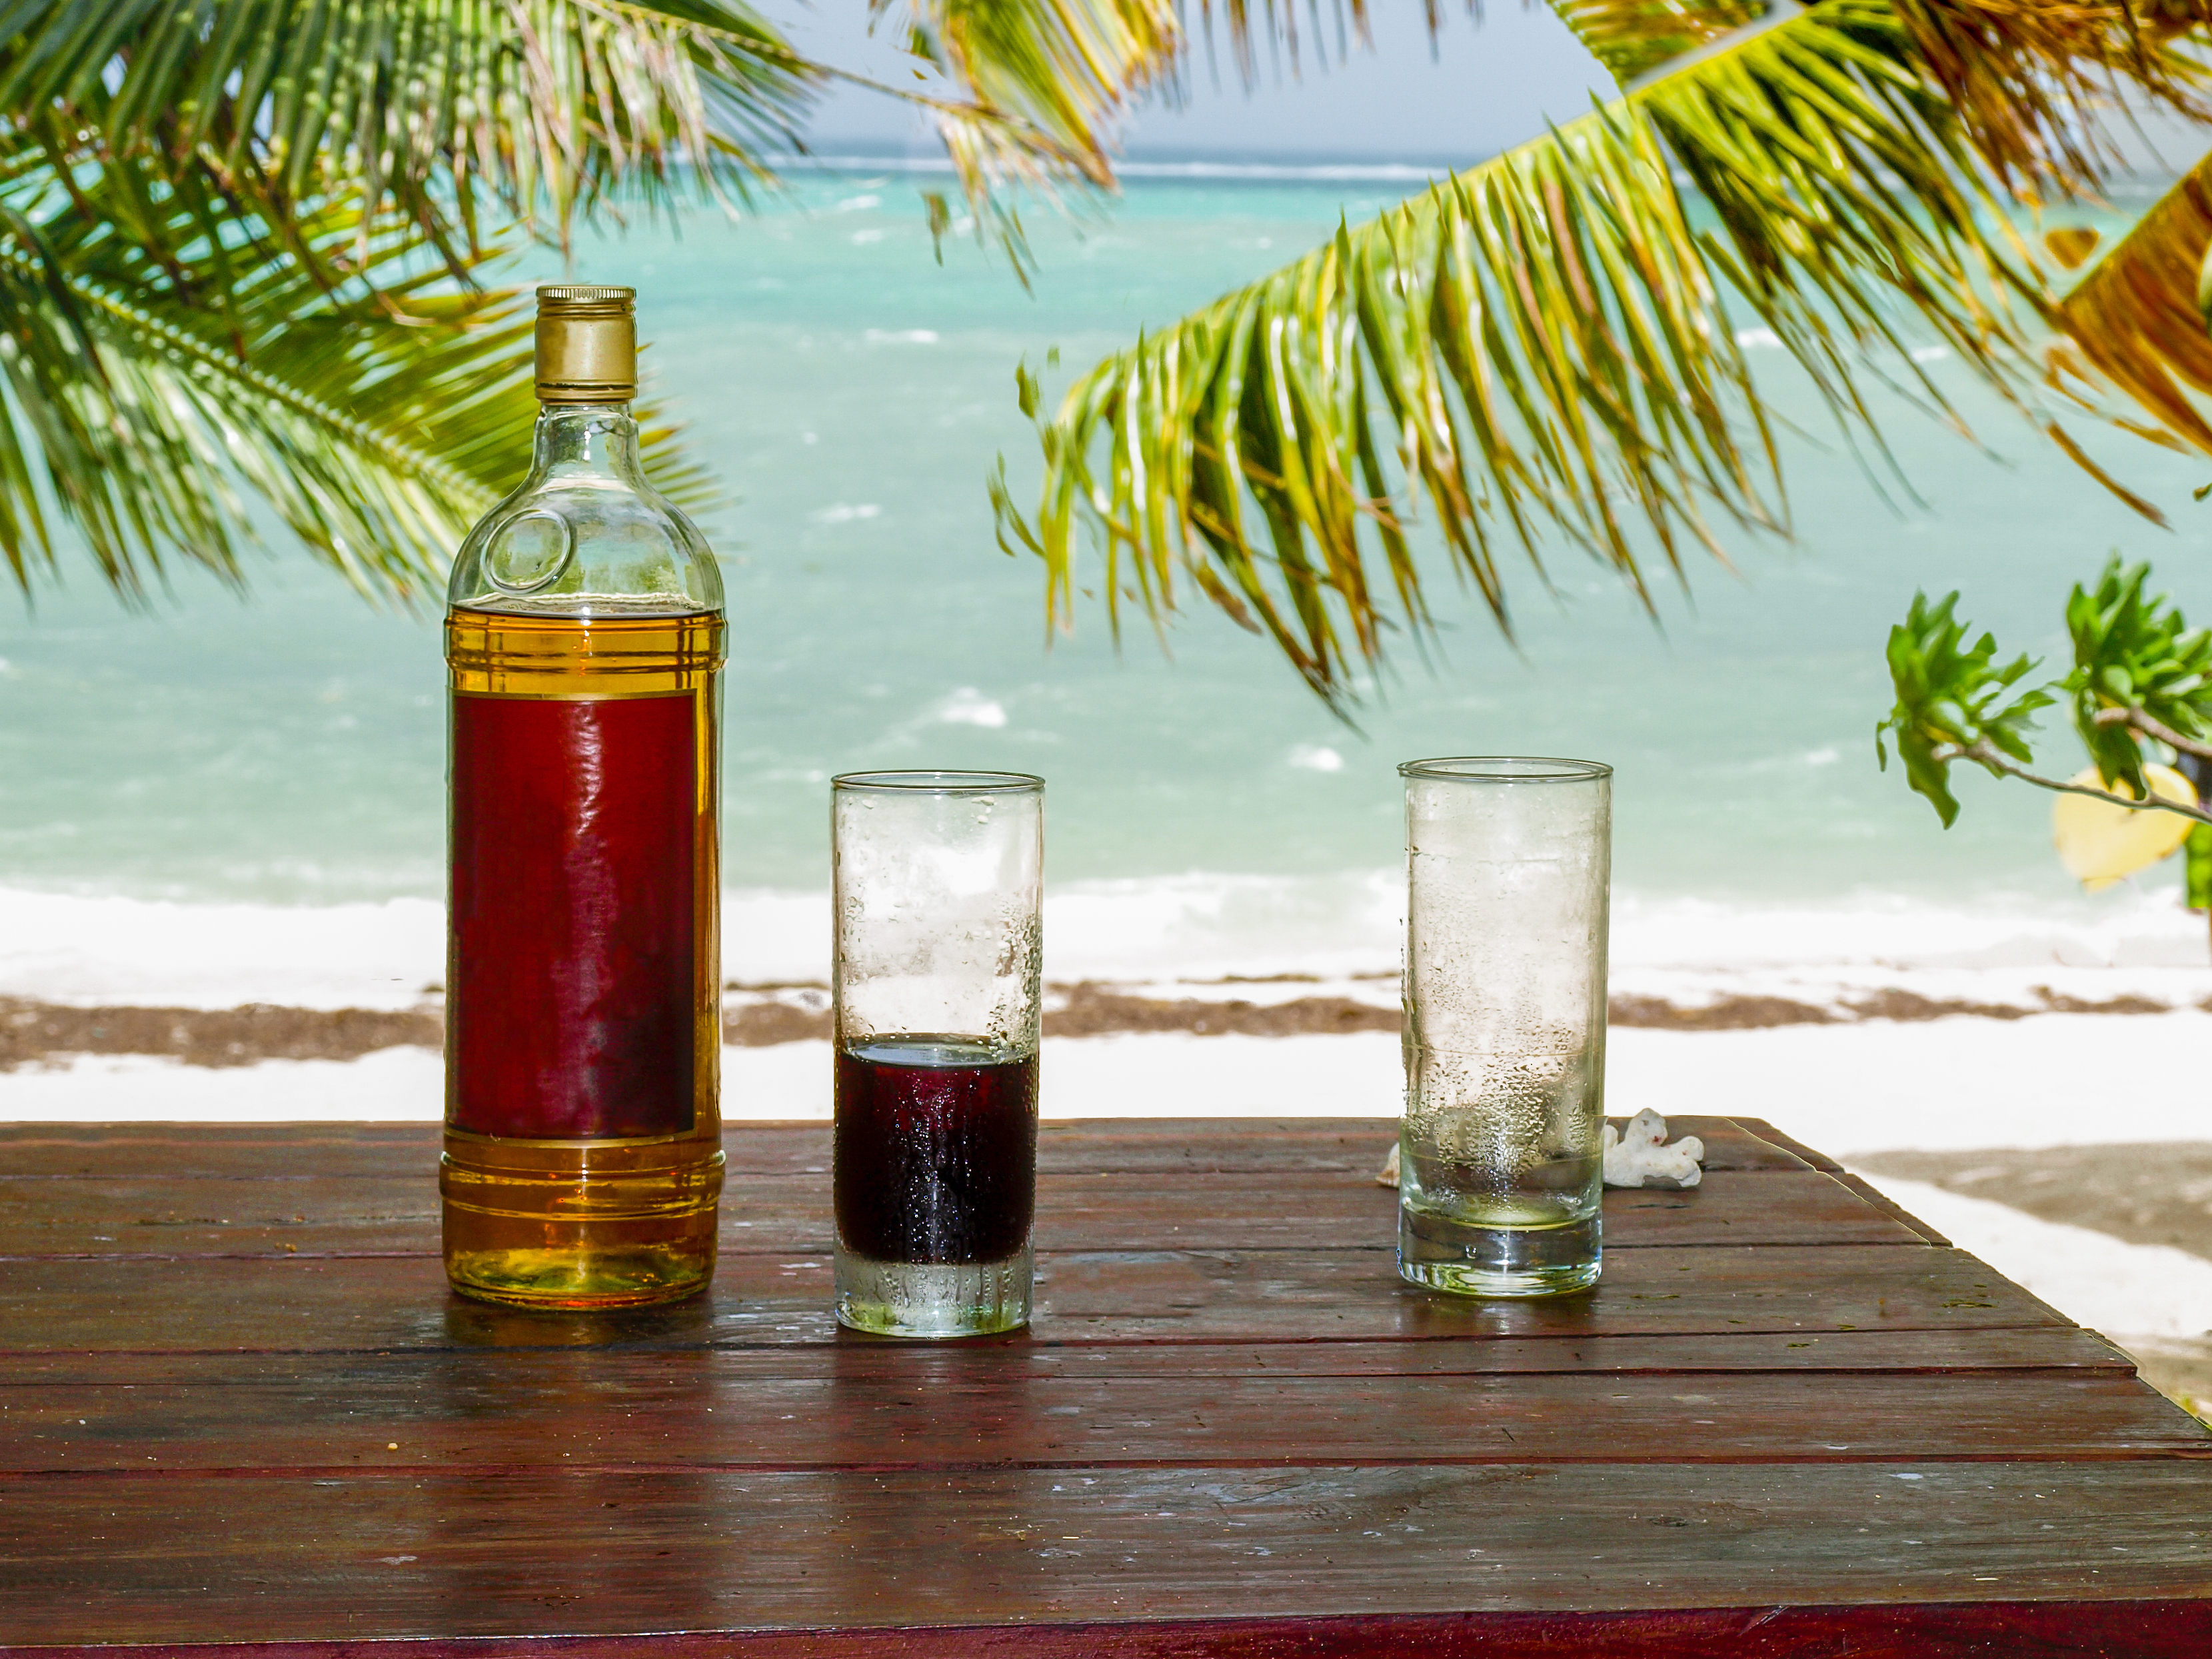 Mauritian rum